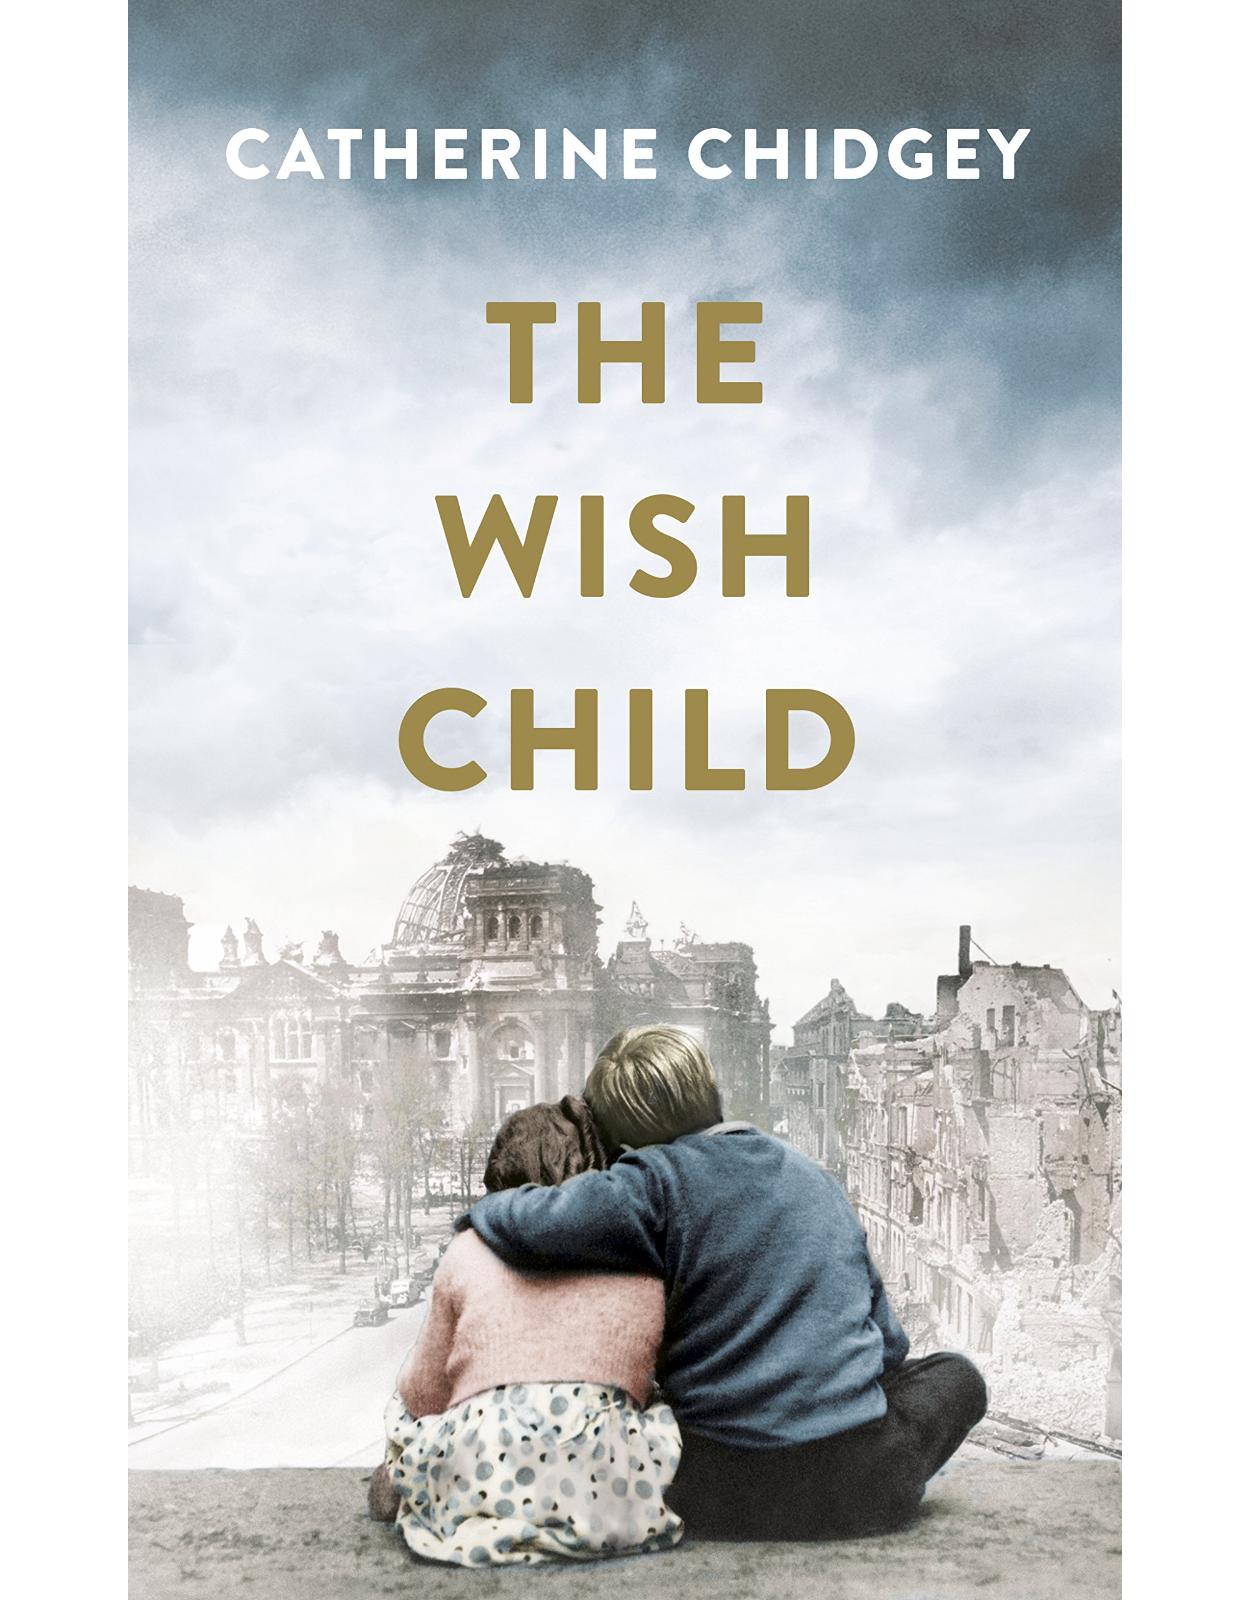 The Wish Child